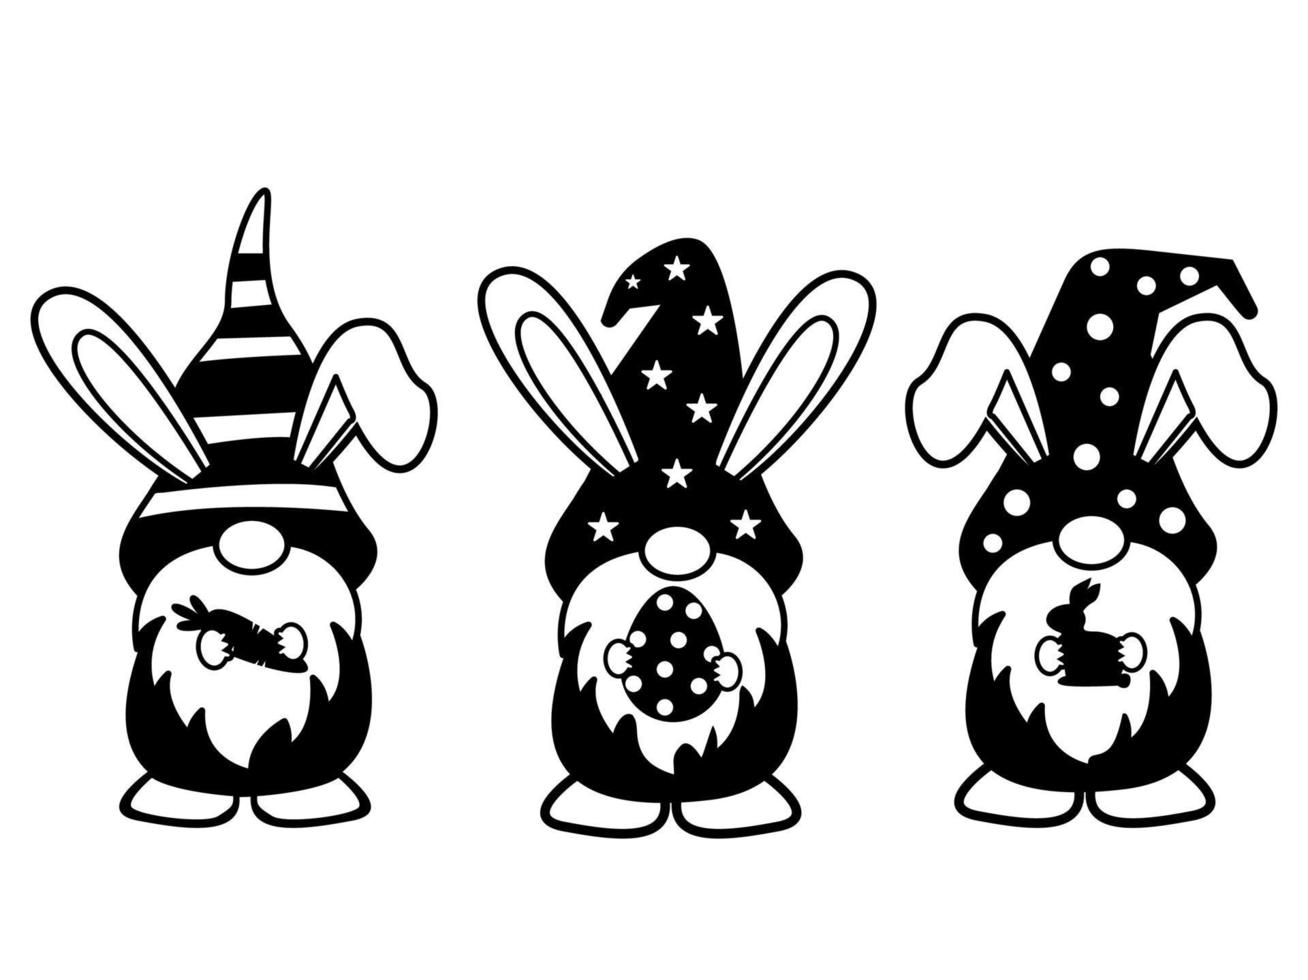 trois joyeux gnomes de pâques mignons avec des oreilles de lapin tenant une carotte, un œuf de pâques, des cliparts de pâques pour enfants, une illustration vectorielle de pâques coupe fichier lapin. vecteur